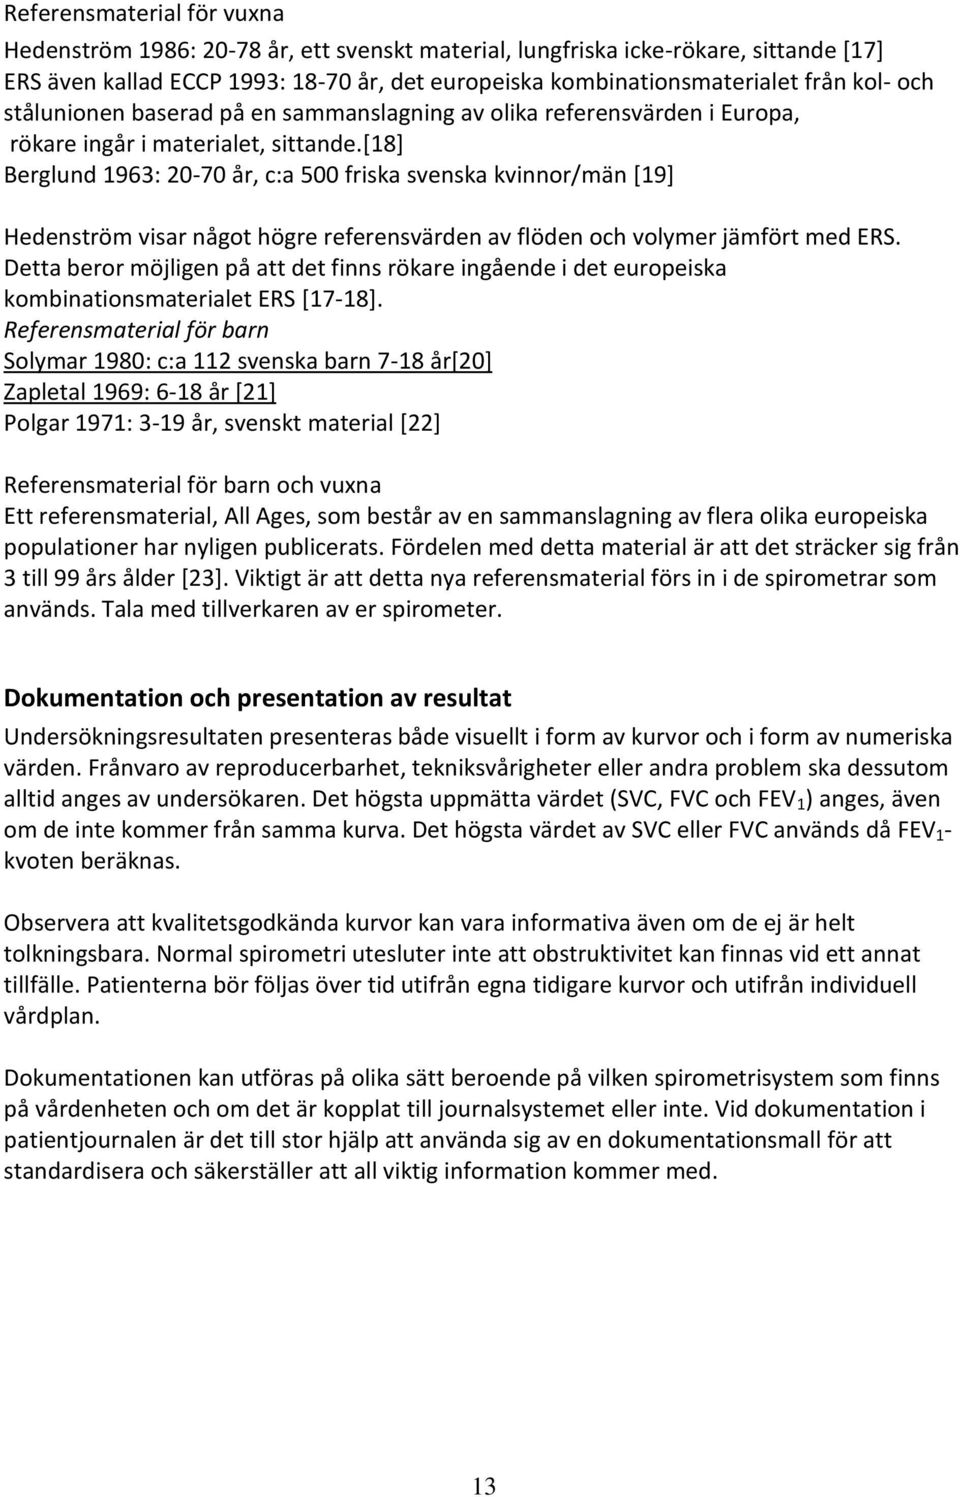 [18] Berglund 1963: 20-70 år, c:a 500 friska svenska kvinnor/män [19] Hedenström visar något högre referensvärden av flöden och volymer jämfört med ERS.